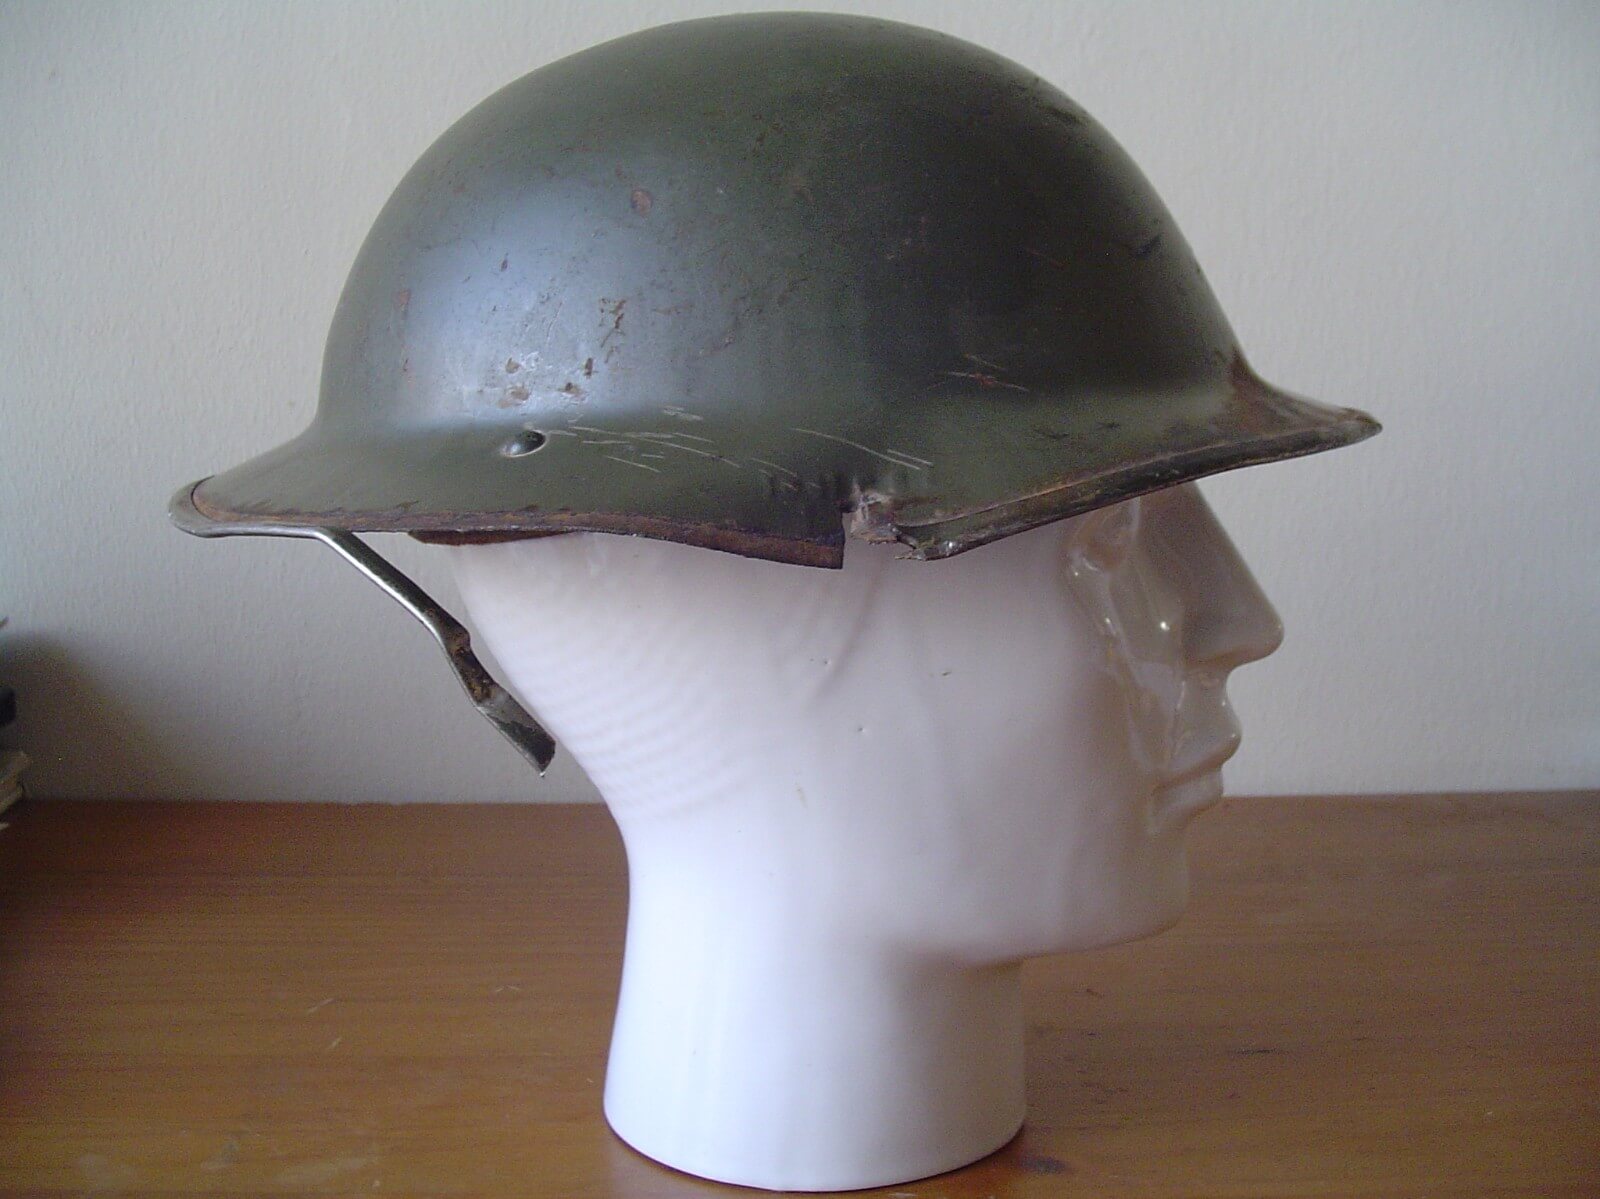 Engelse helm uit de tweede wereldoorlog gevonden in Pijnacker Nootdorp